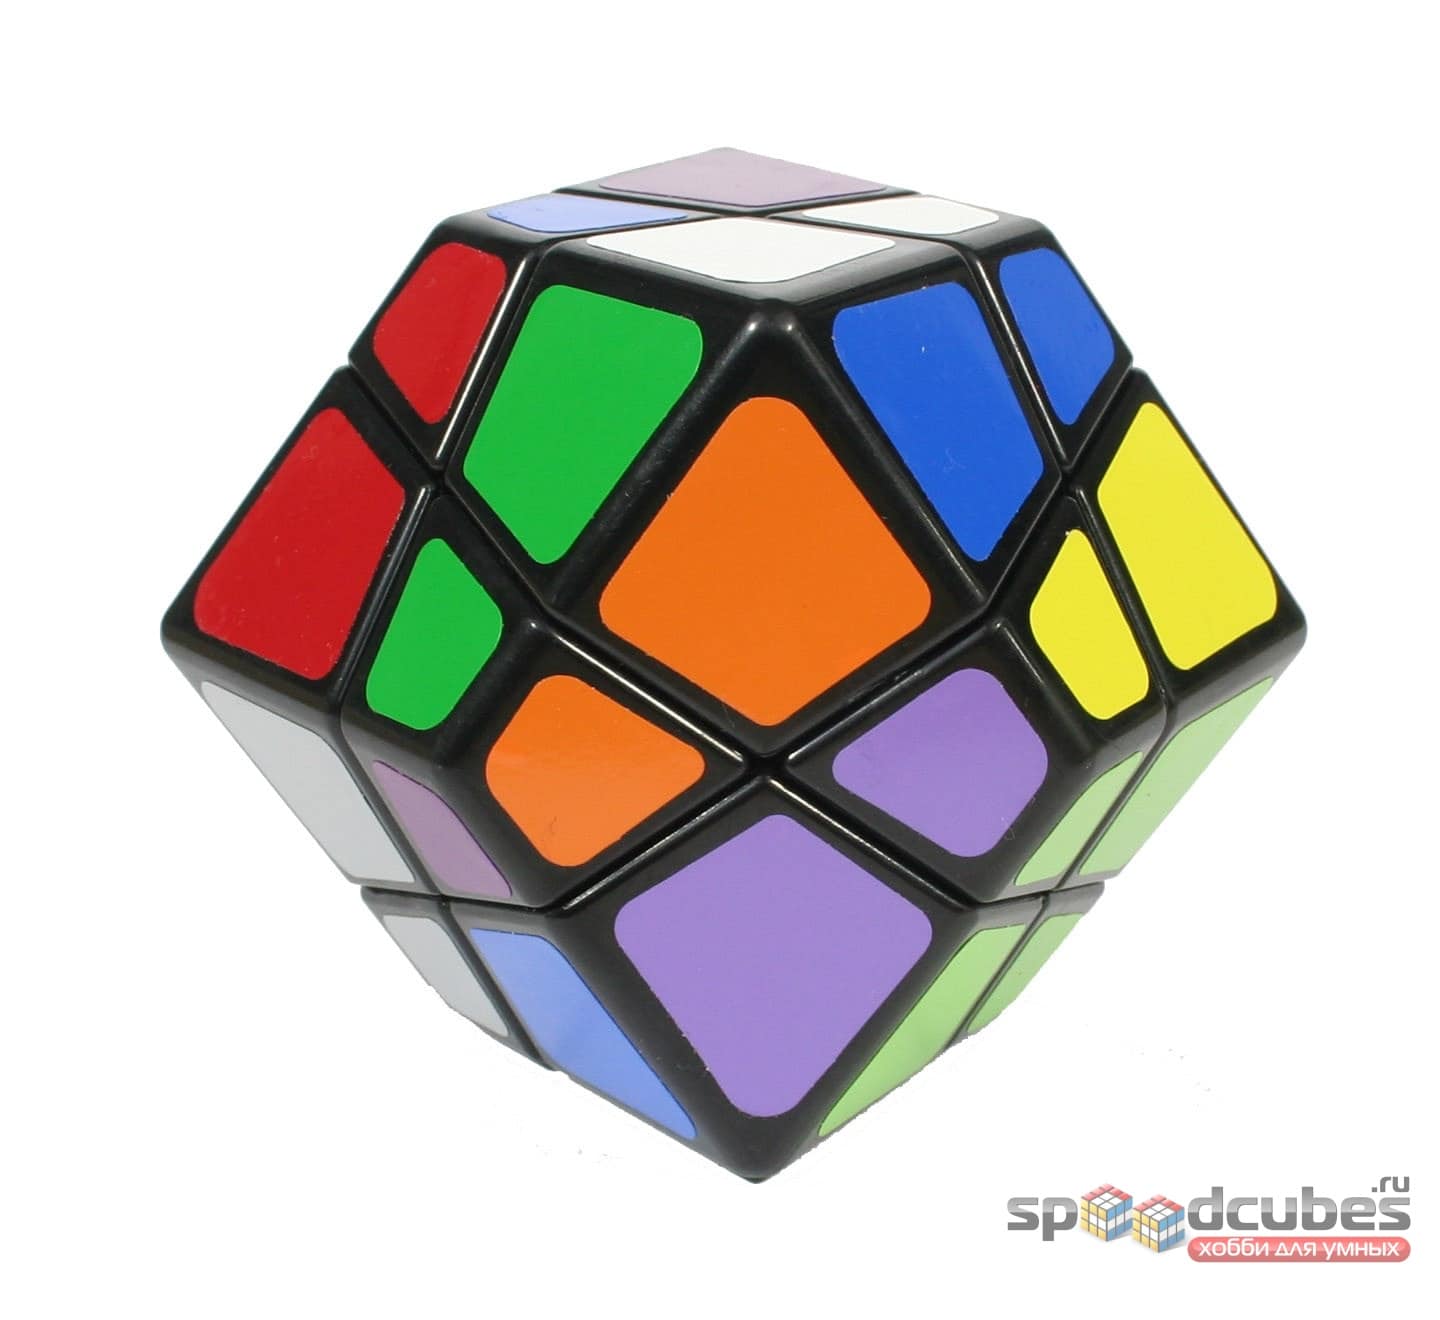 Lanlan Skewb Dodecahedron 1